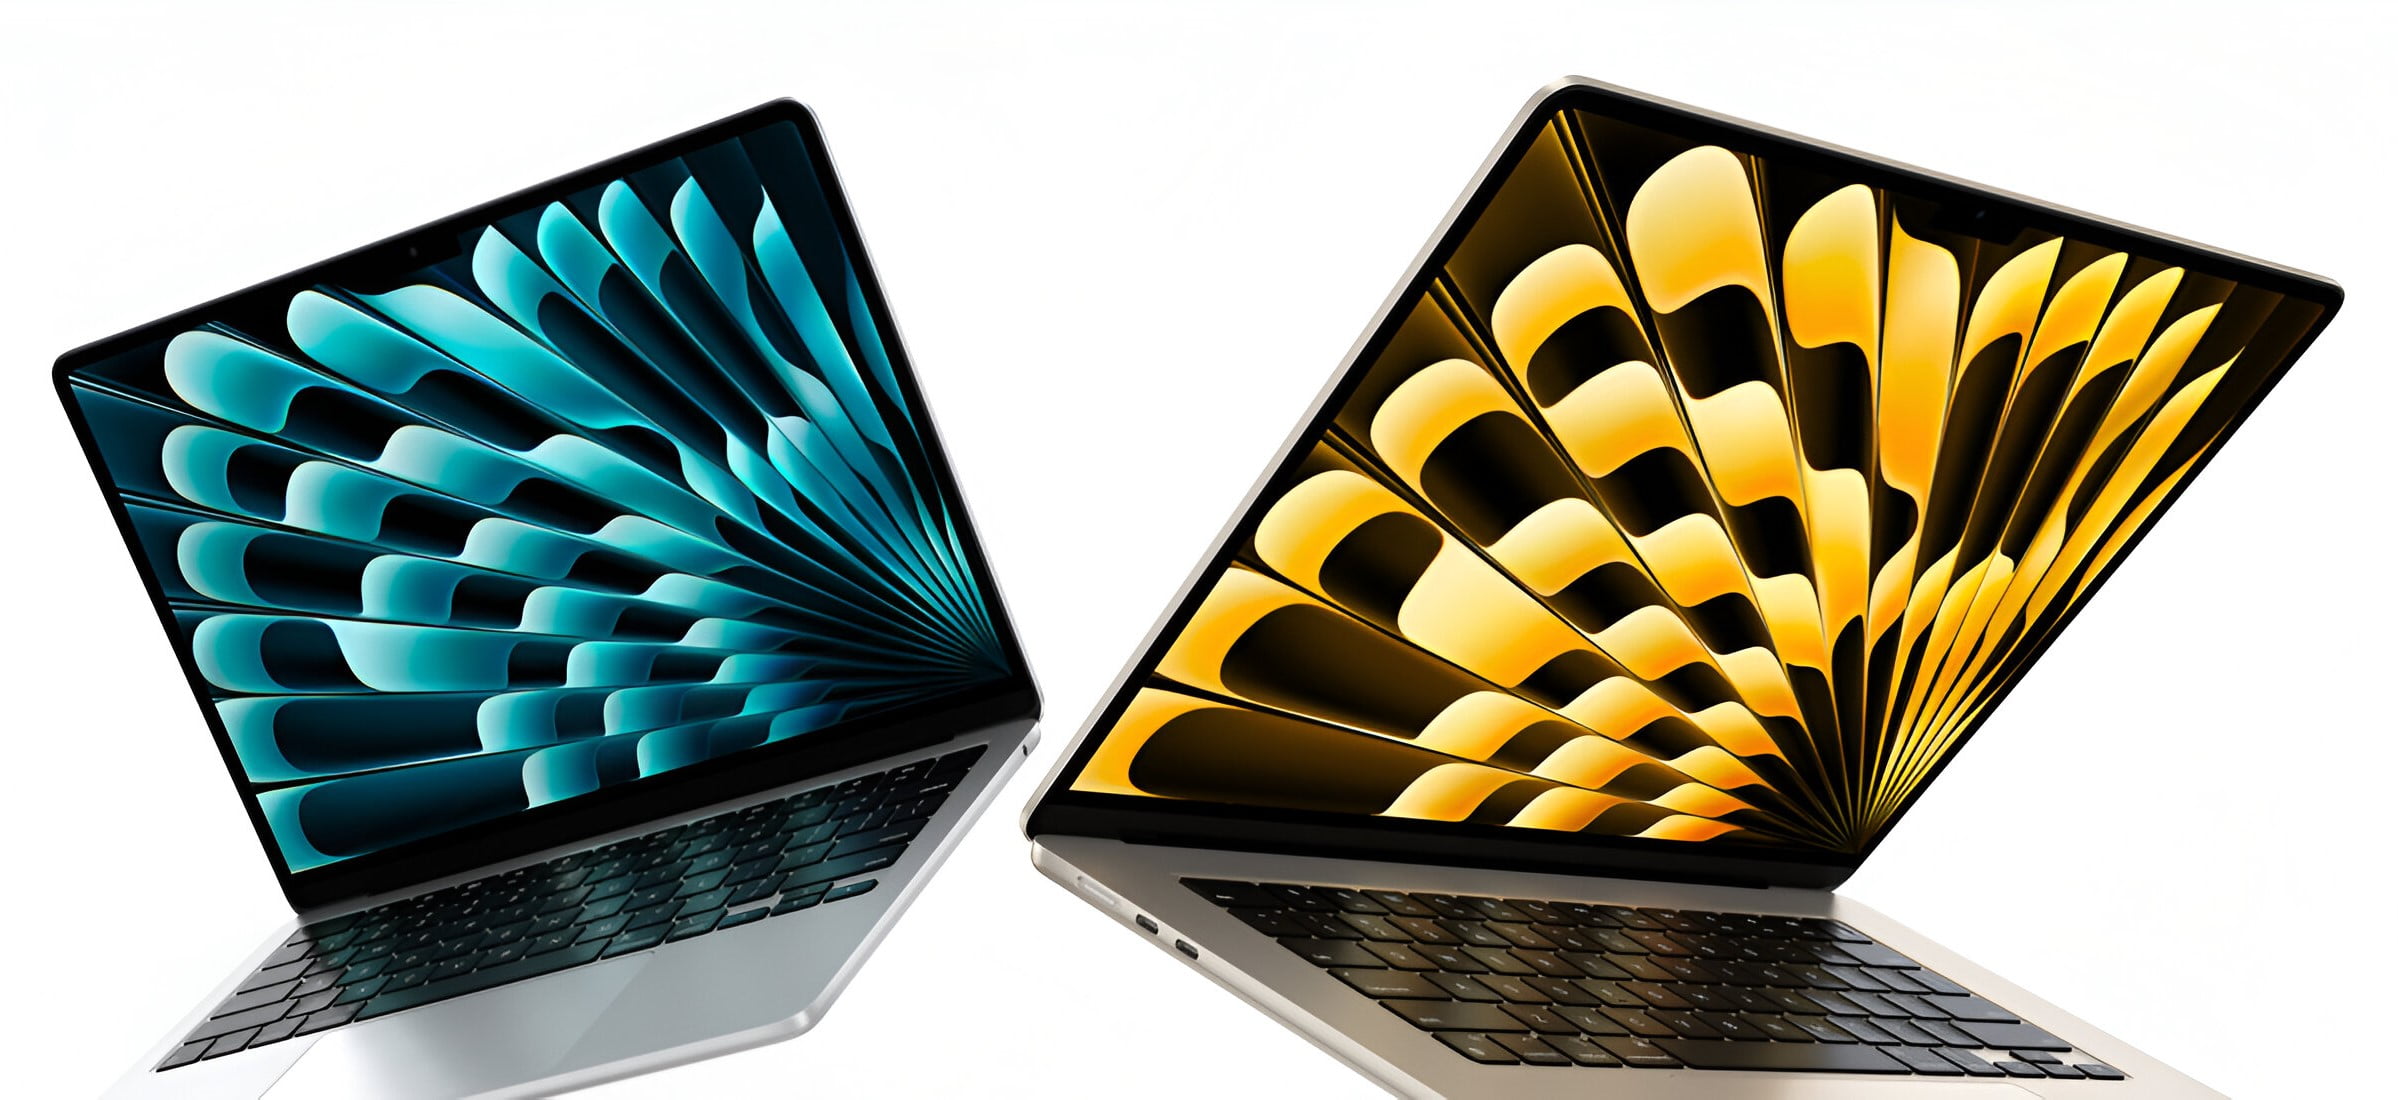 Dwa laptopy MacBook Air z wyświetlonymi kolorowymi wzorami na ekranach (niebieski z lewej, żółty z prawej).